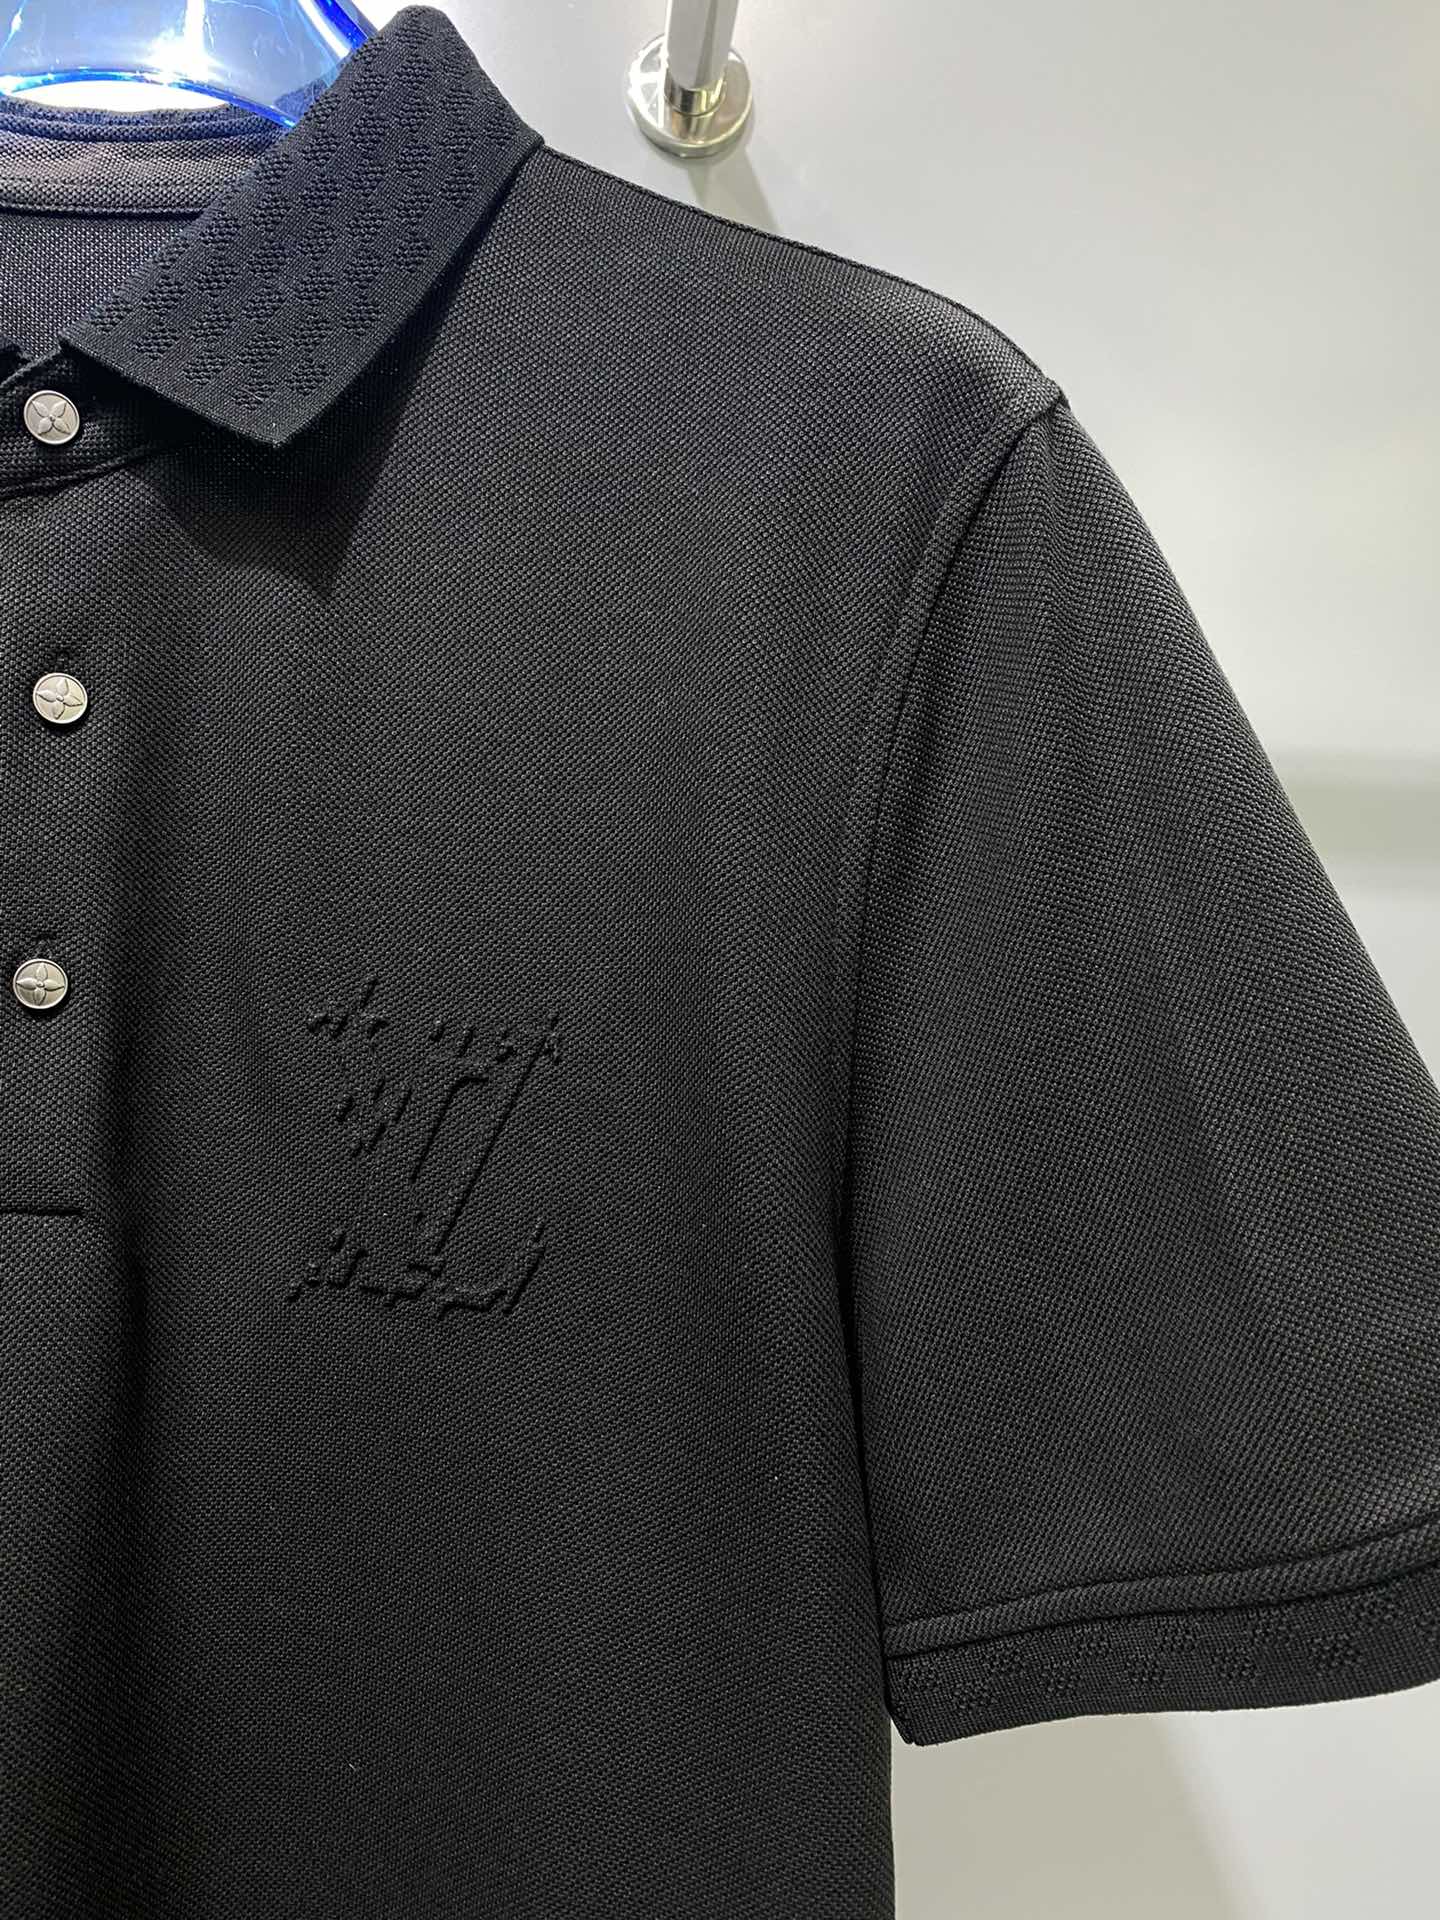 #PD夏季新款短袖T恤Polo客供定制珠地面料简单时尚款超级好看！简单大方的款式！满满的高级感四季可穿颜